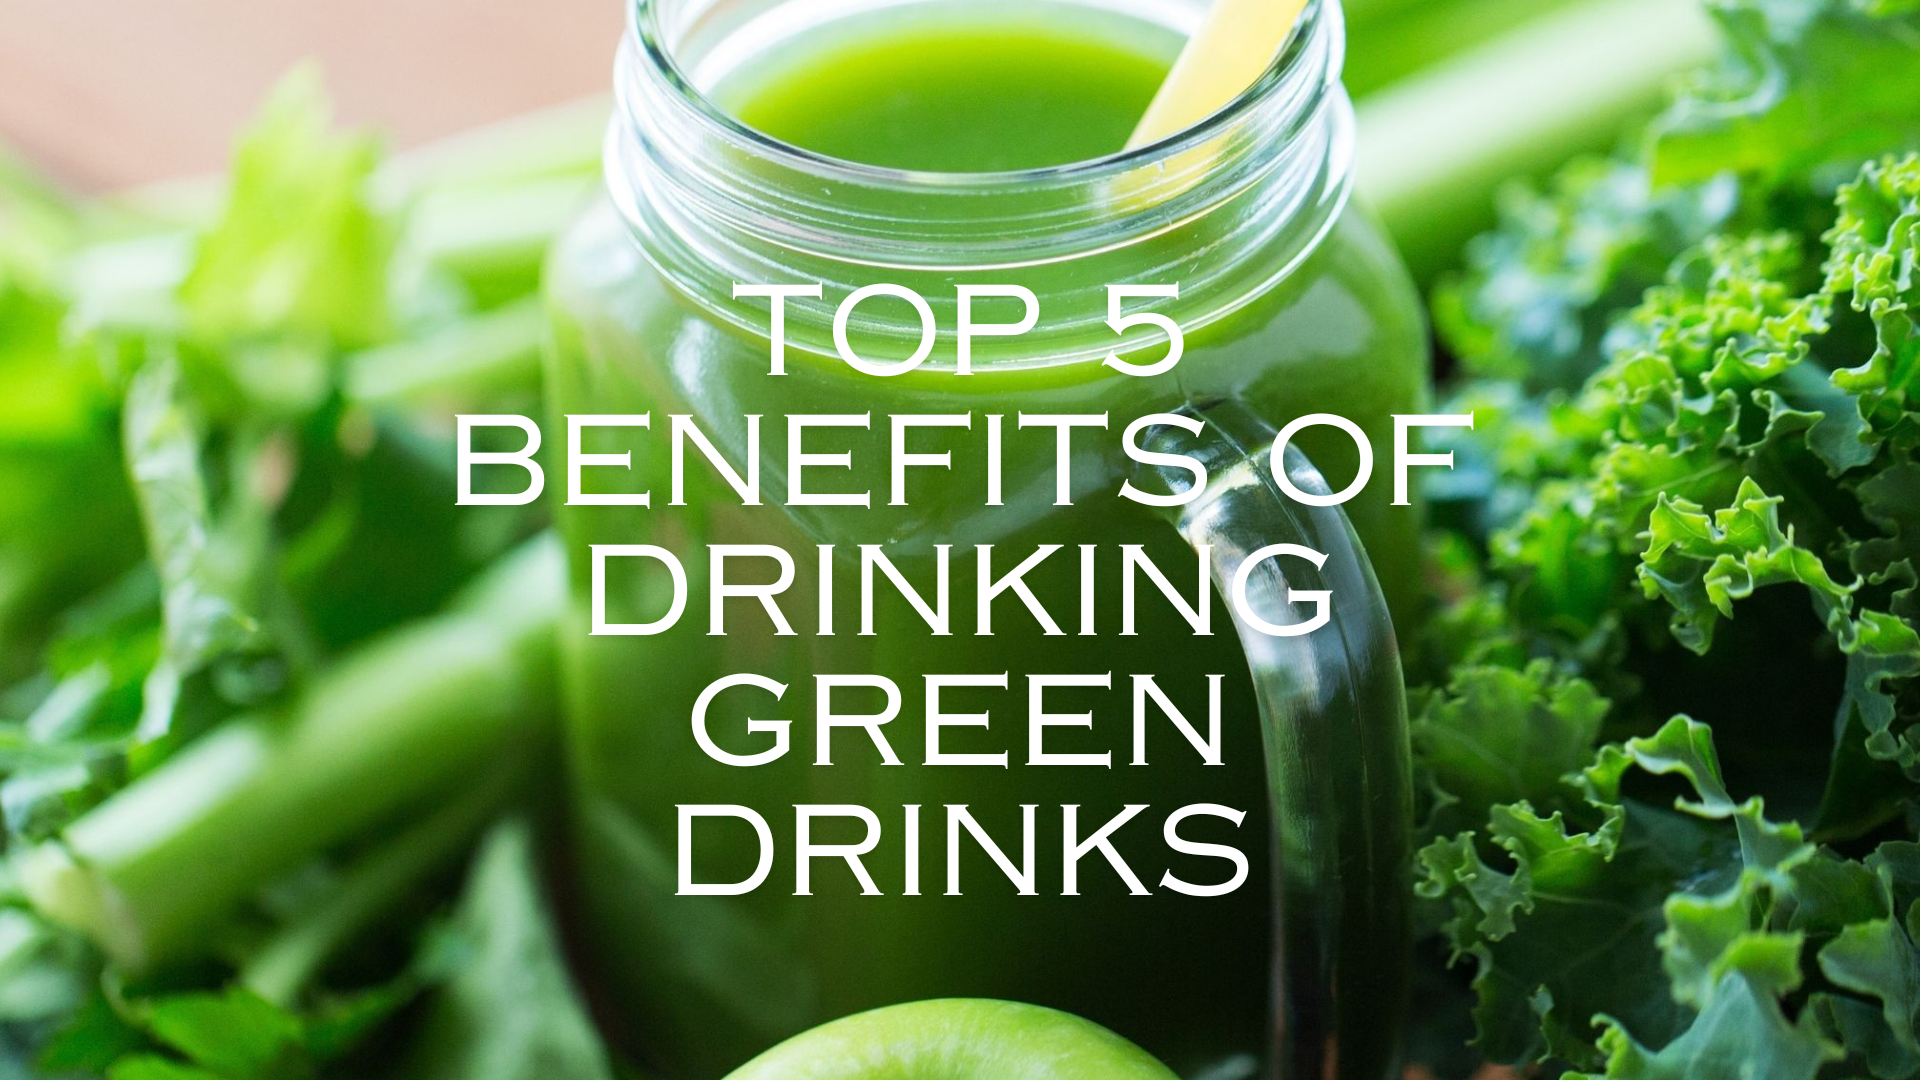 TOP 5 Benefits of Green Drinks: